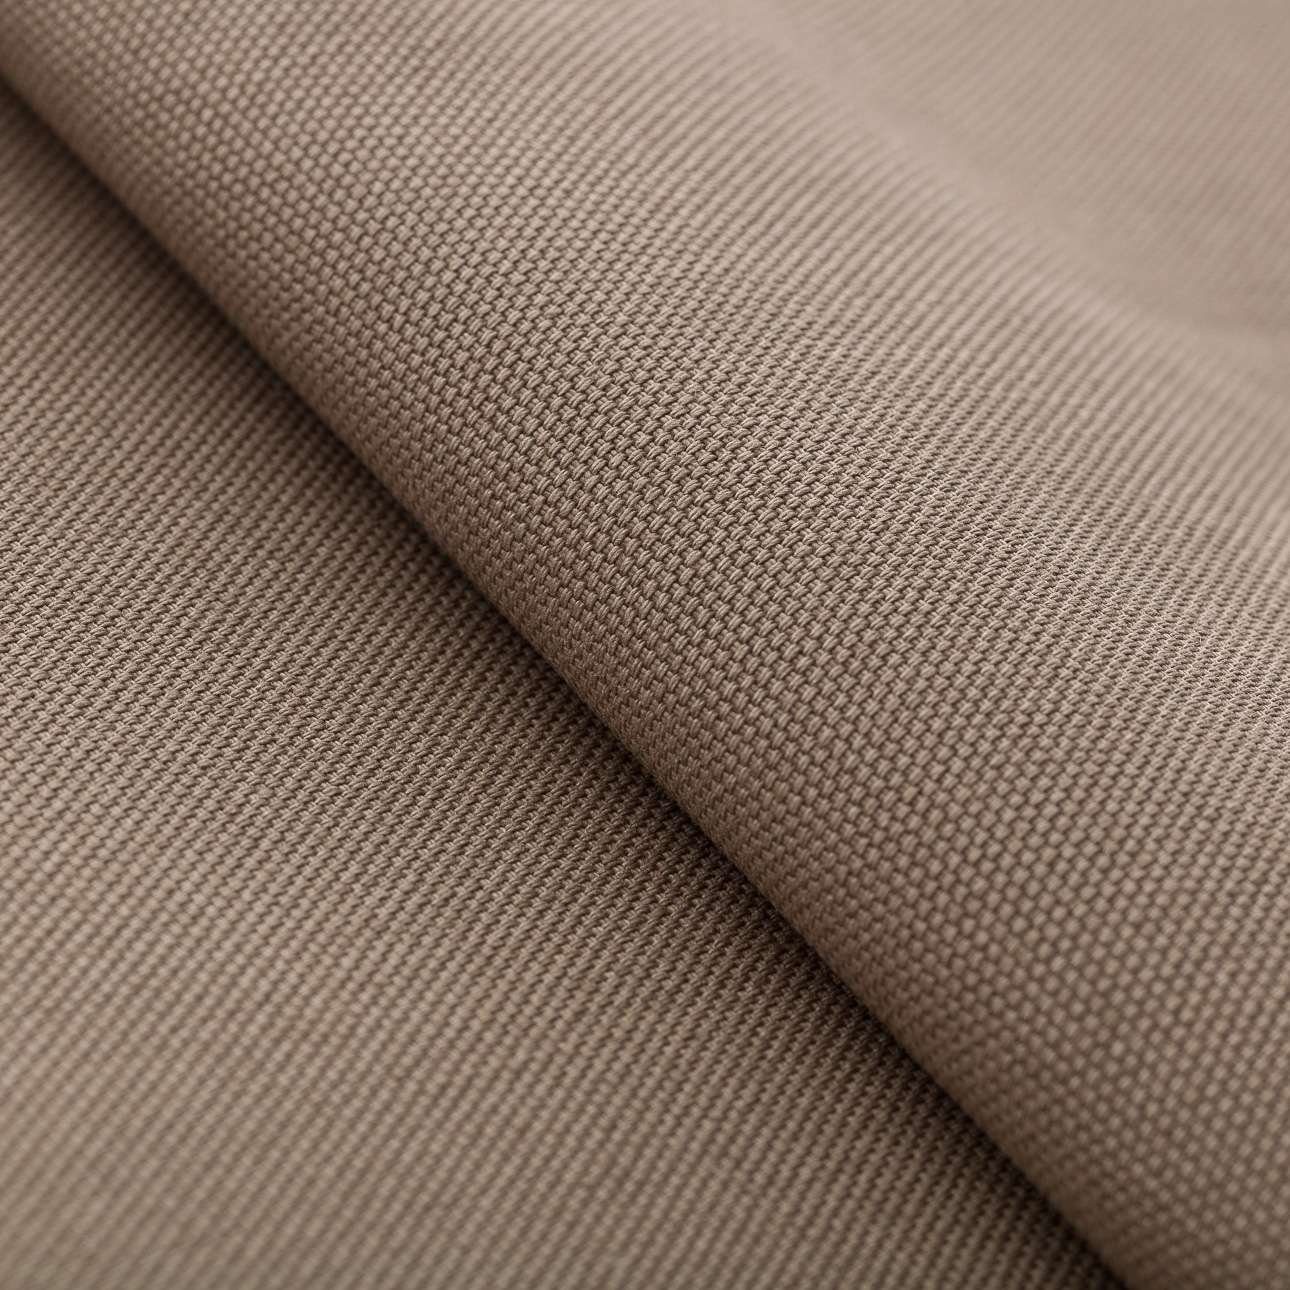 Panama Cotton 40 cm, 40 Bindeschnur mit grau-braun x Dekoria Stuhlkissen x 3,5 Dekokissen Ulrich